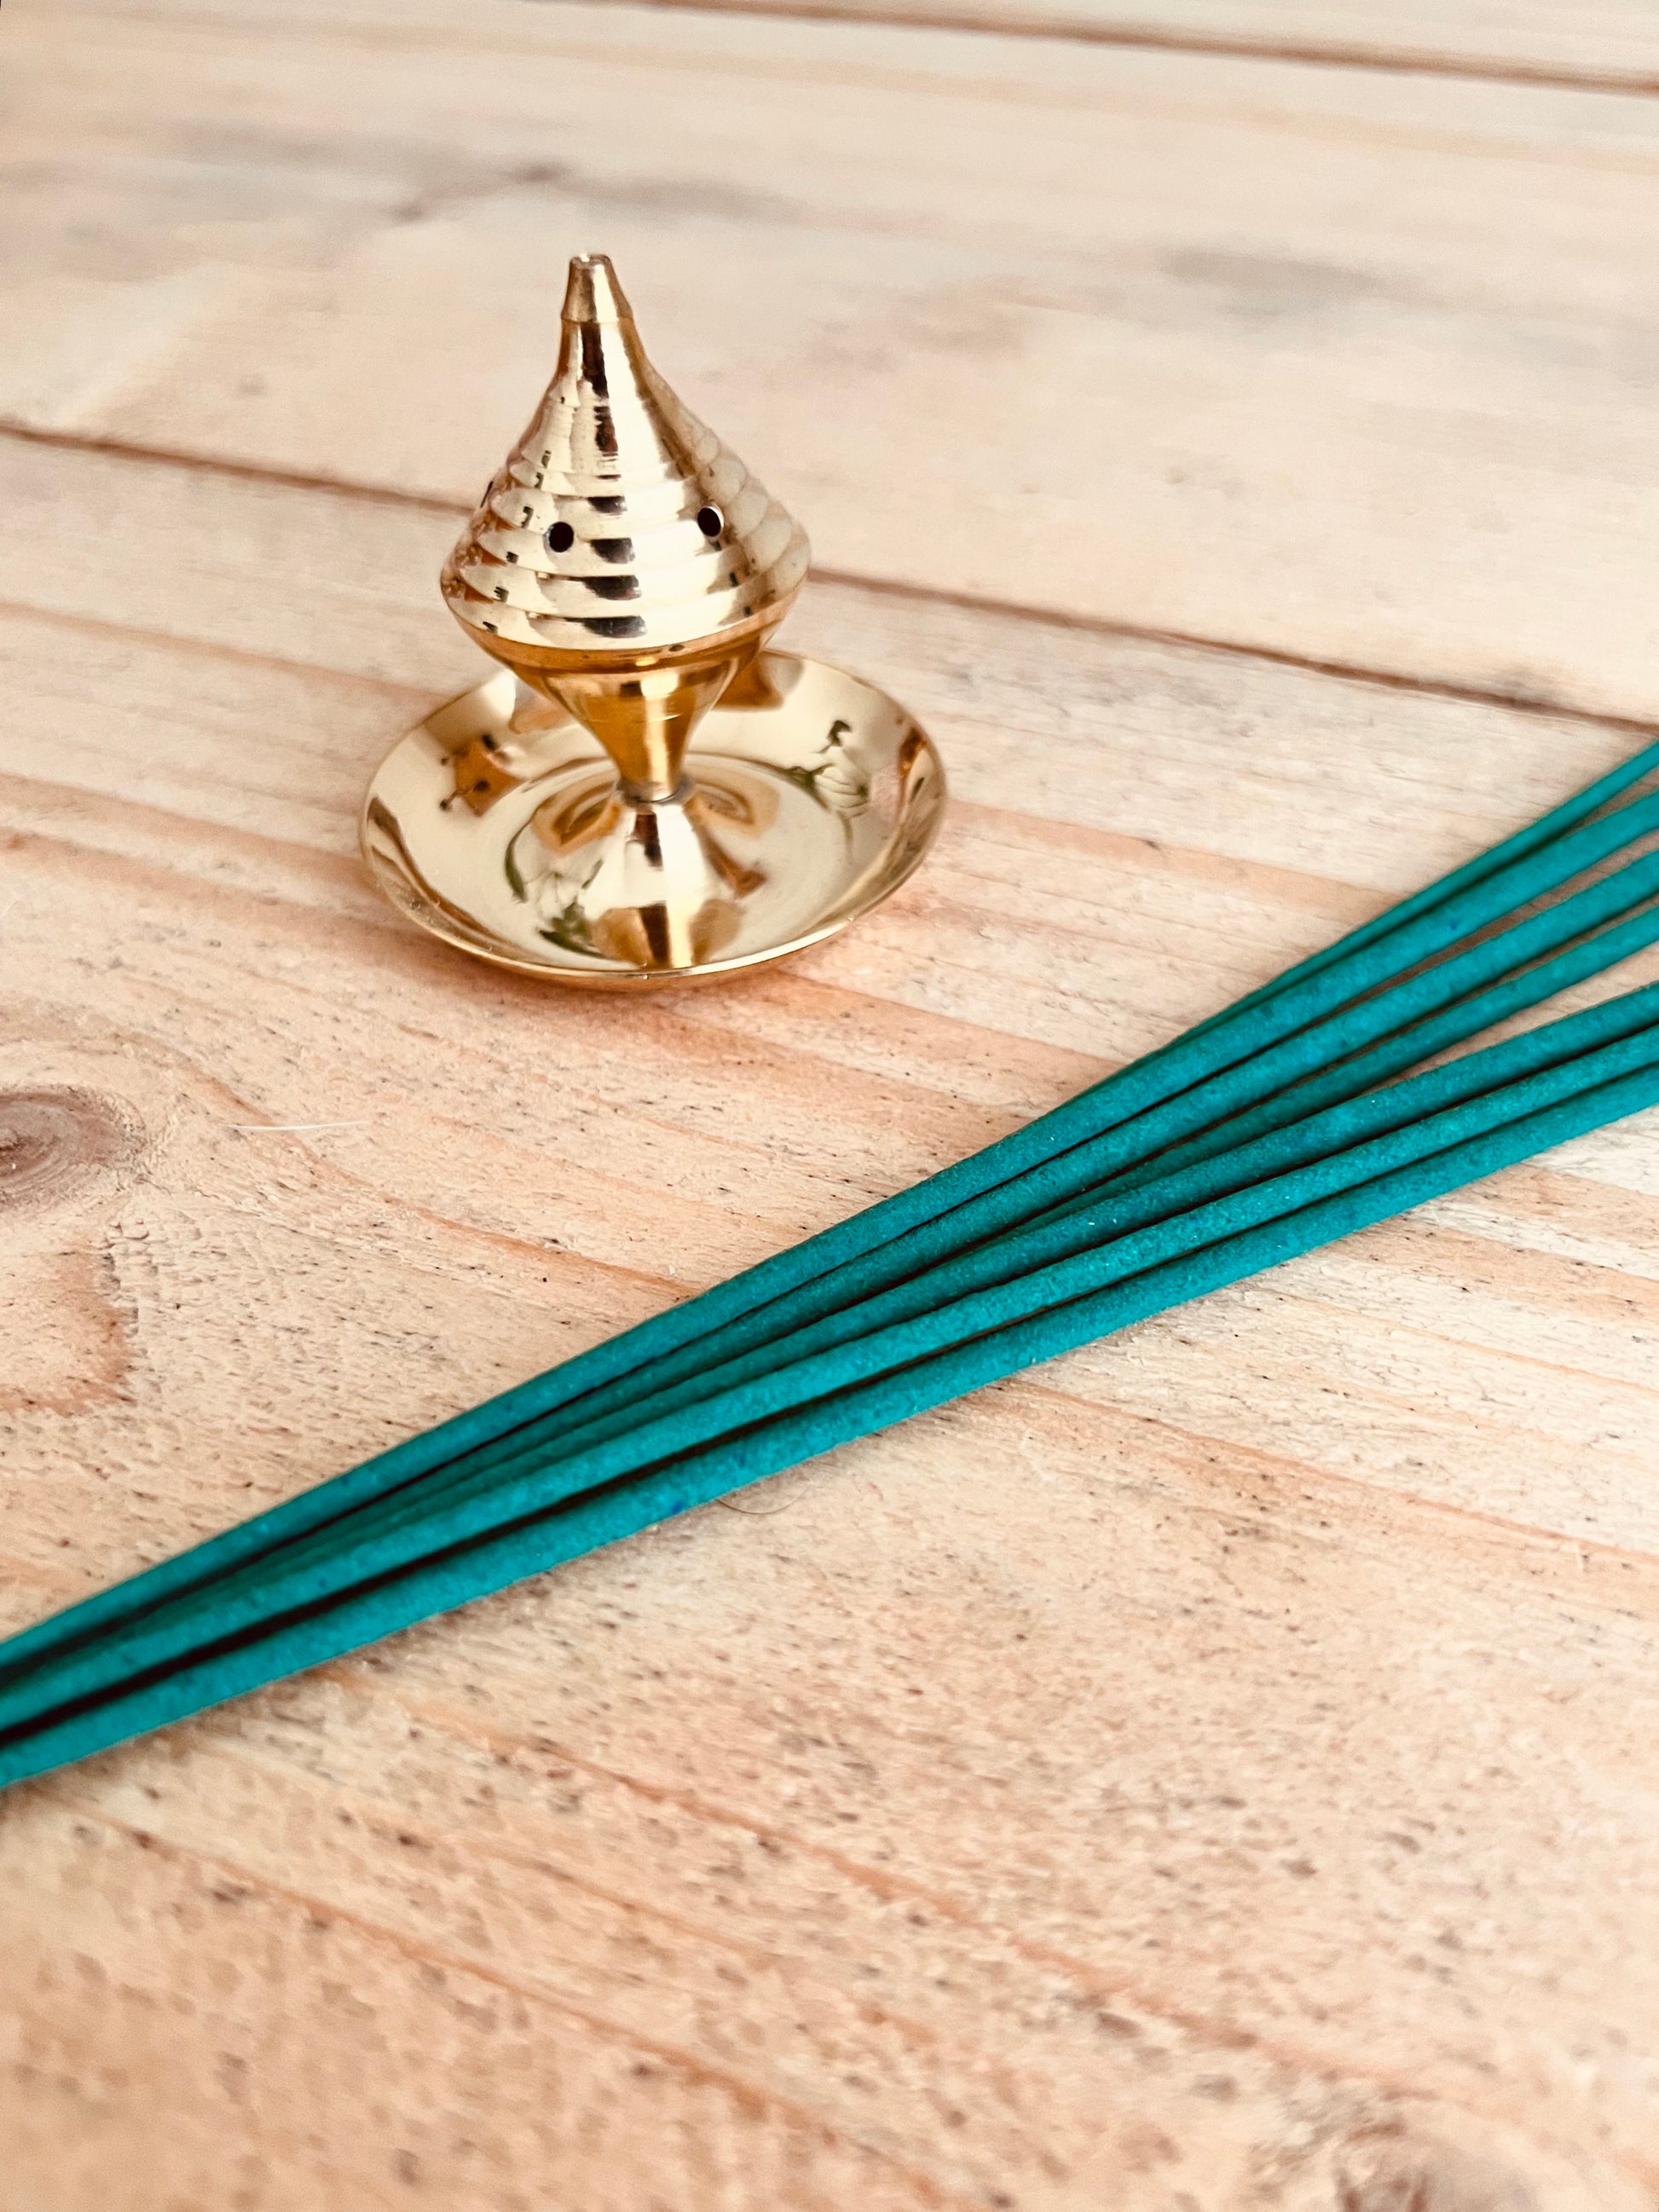 Traditional Indian brass incense holder burner